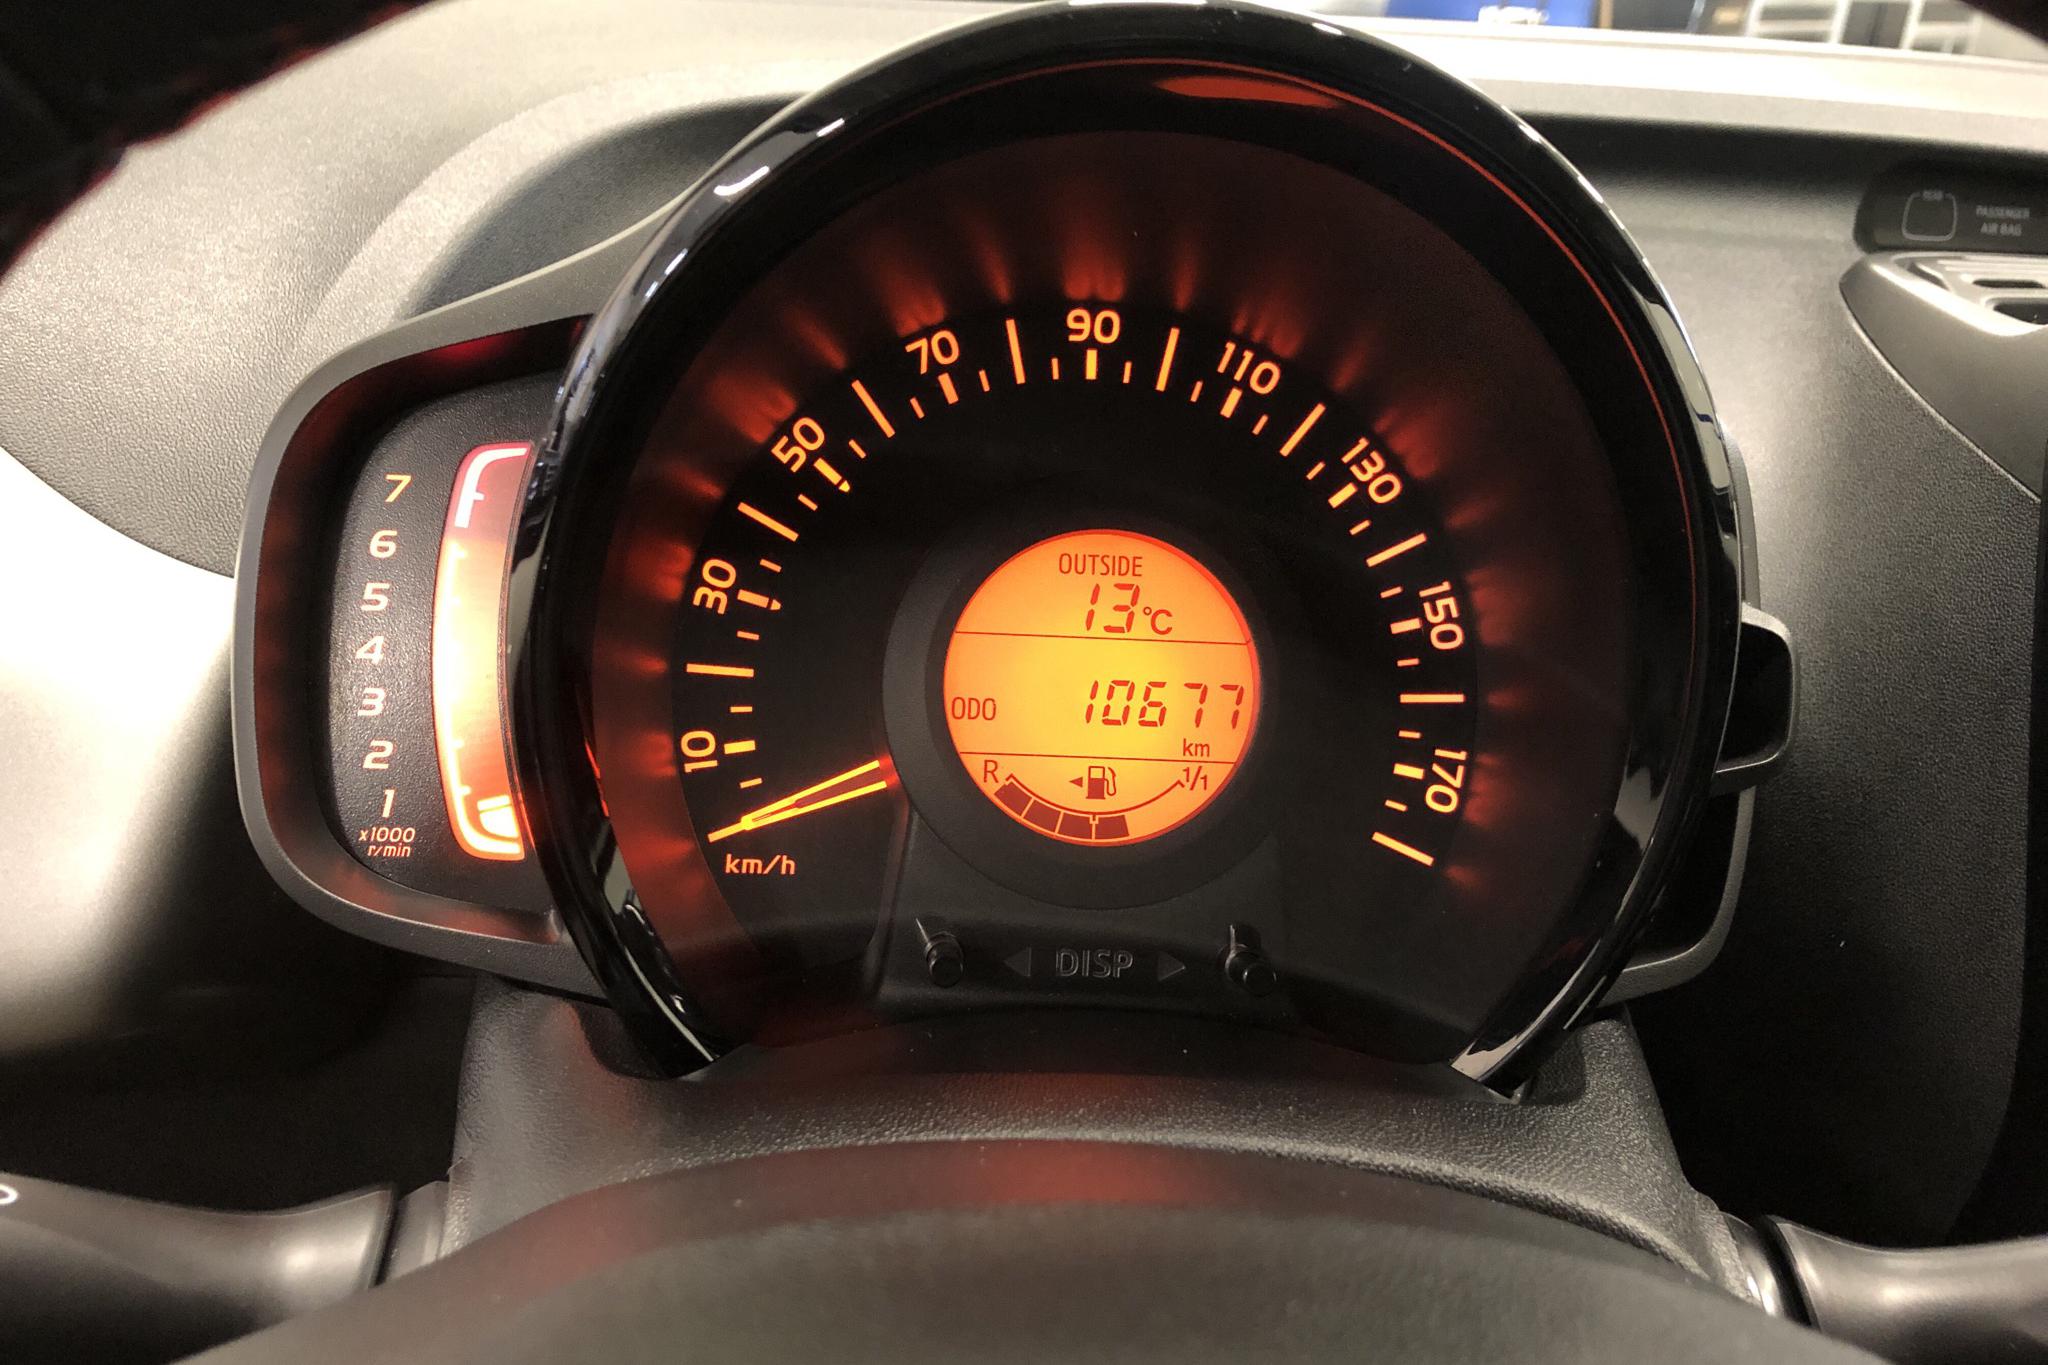 Peugeot 108 PureTech 5dr (68hk) - 10 680 km - Manual - white - 2016